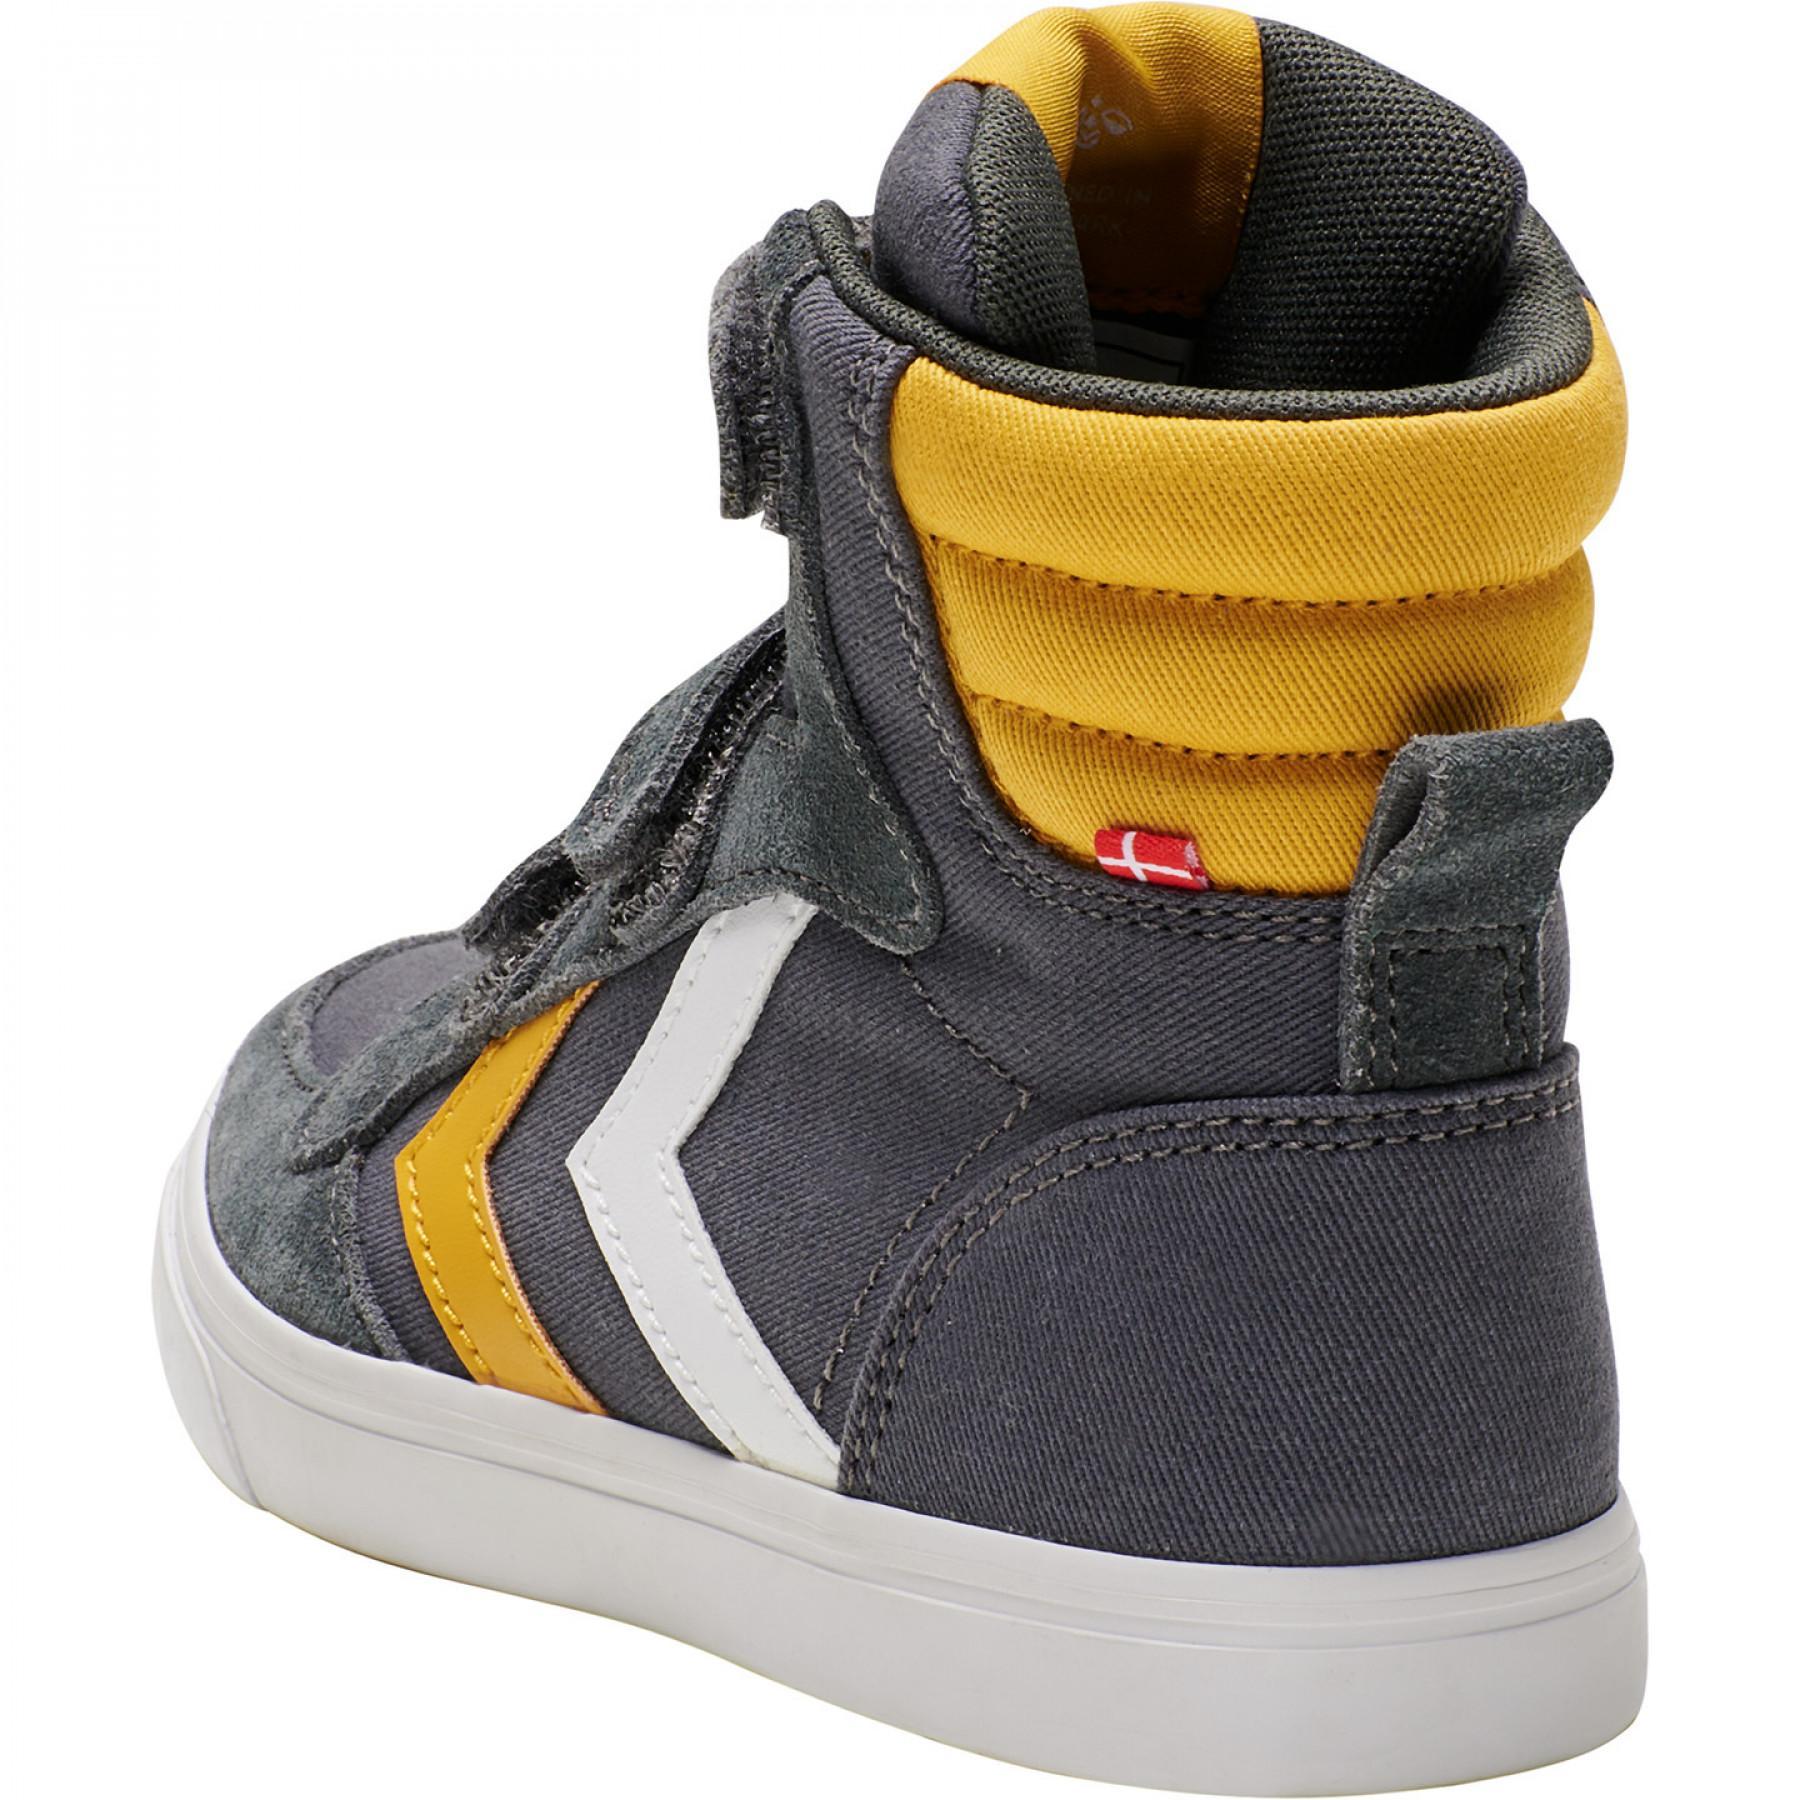 Children's sneakers Hummel stadil high